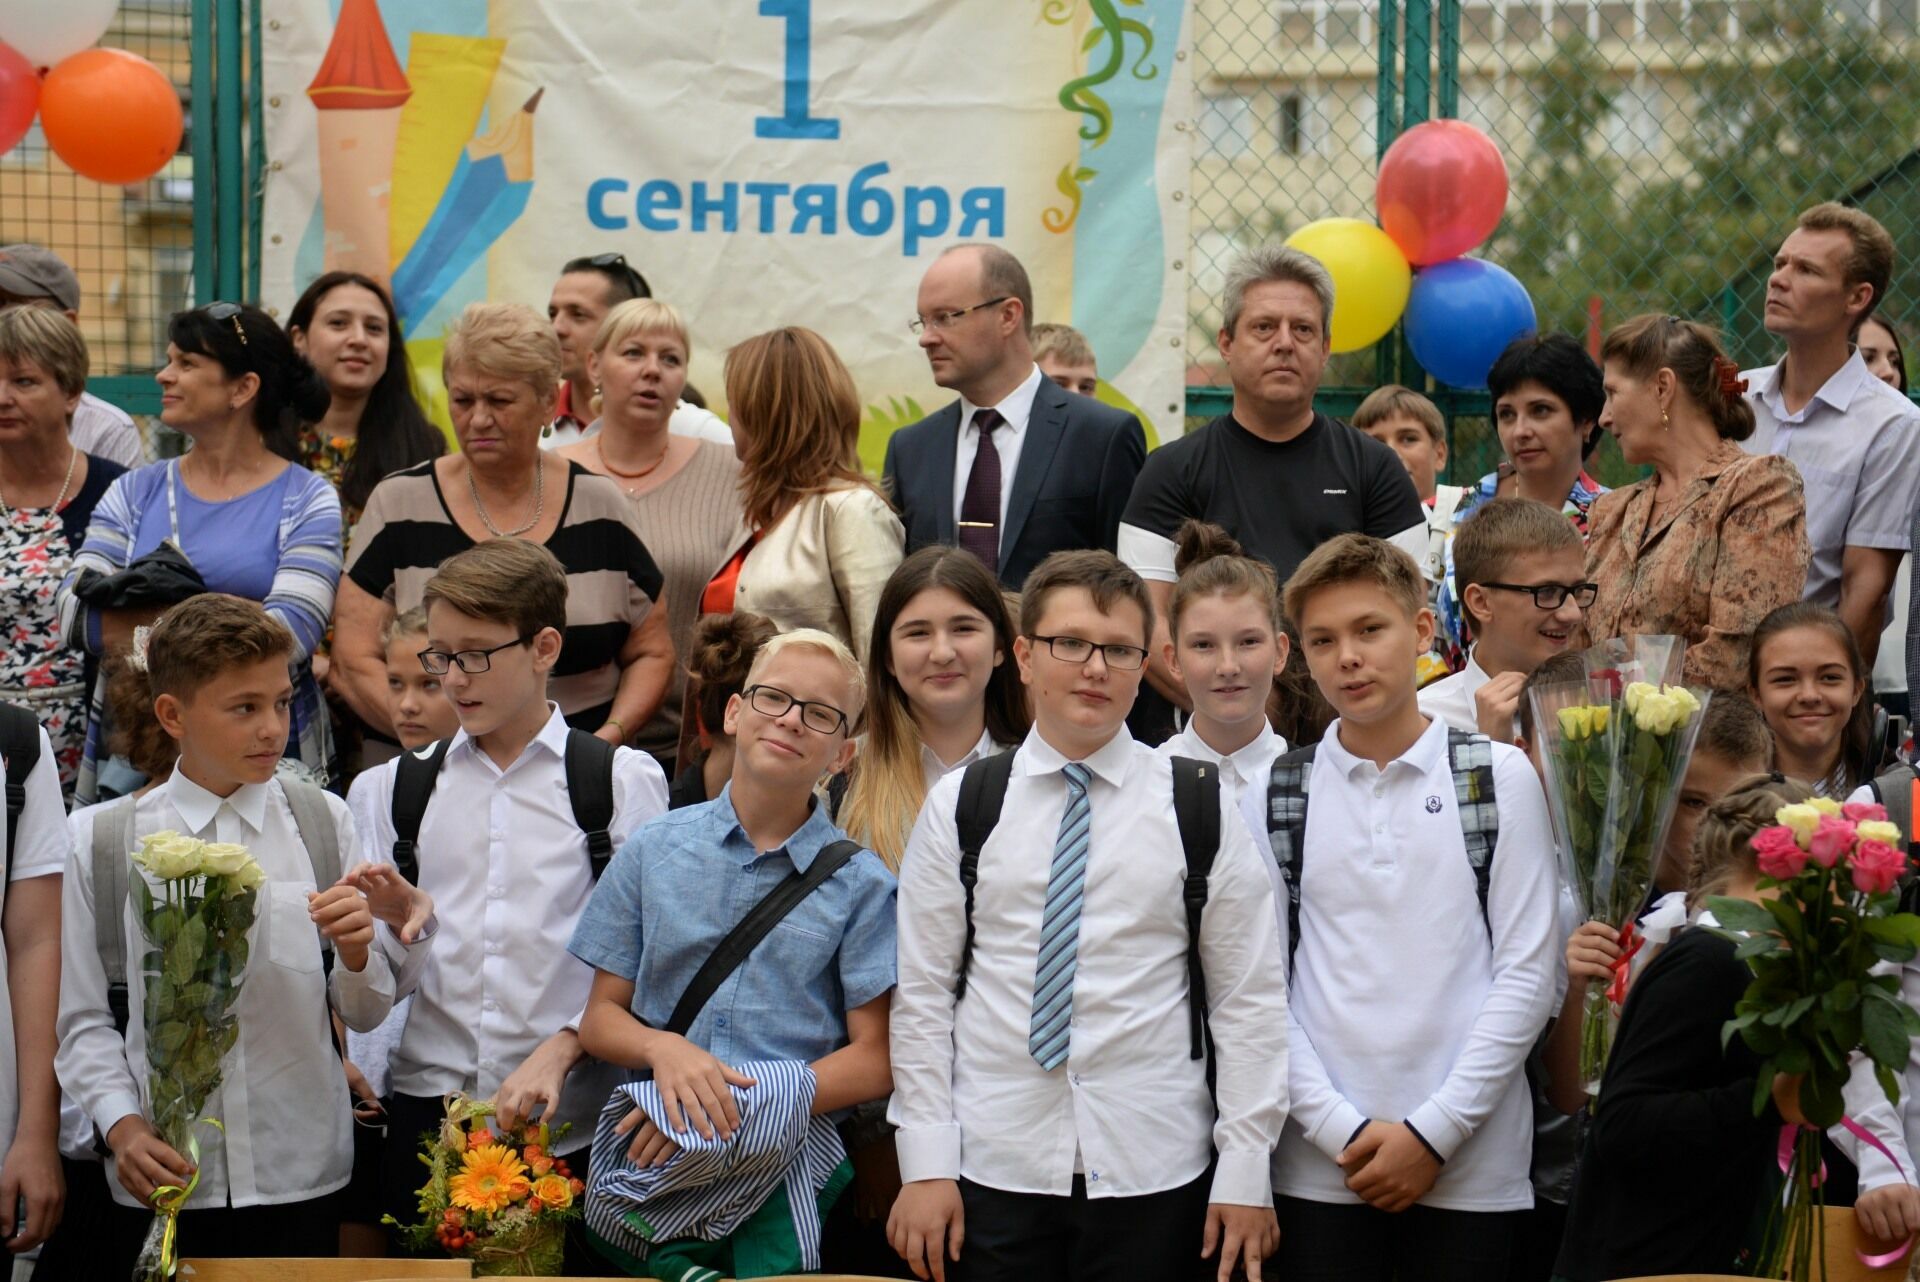 Нижегородских школьников обяжут еженедельно исполнять гимн России